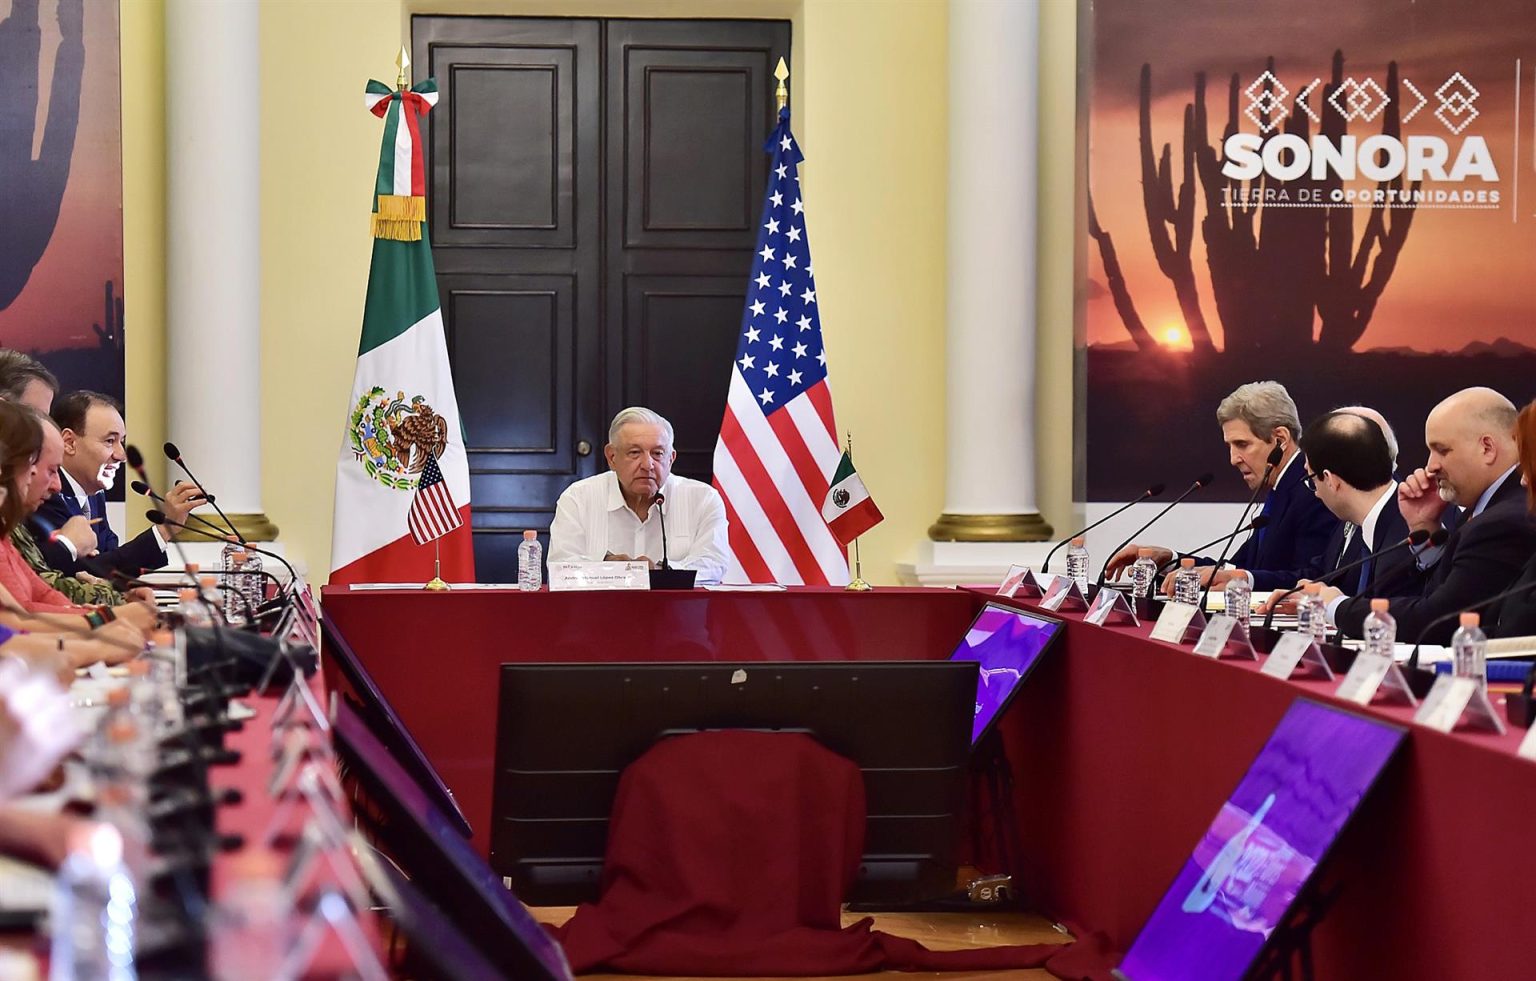 Fotografía cedida por la Presidencia de México del mandatario mexicano, Andrés Manuel López Obrador (c), durante una reunión con el enviado especial presidencial de los Estados Unidos para el clima, John Kerry (d), el 28 de octubre de 2022, en Hermosillo (México).  EFE/ Presidencia De México